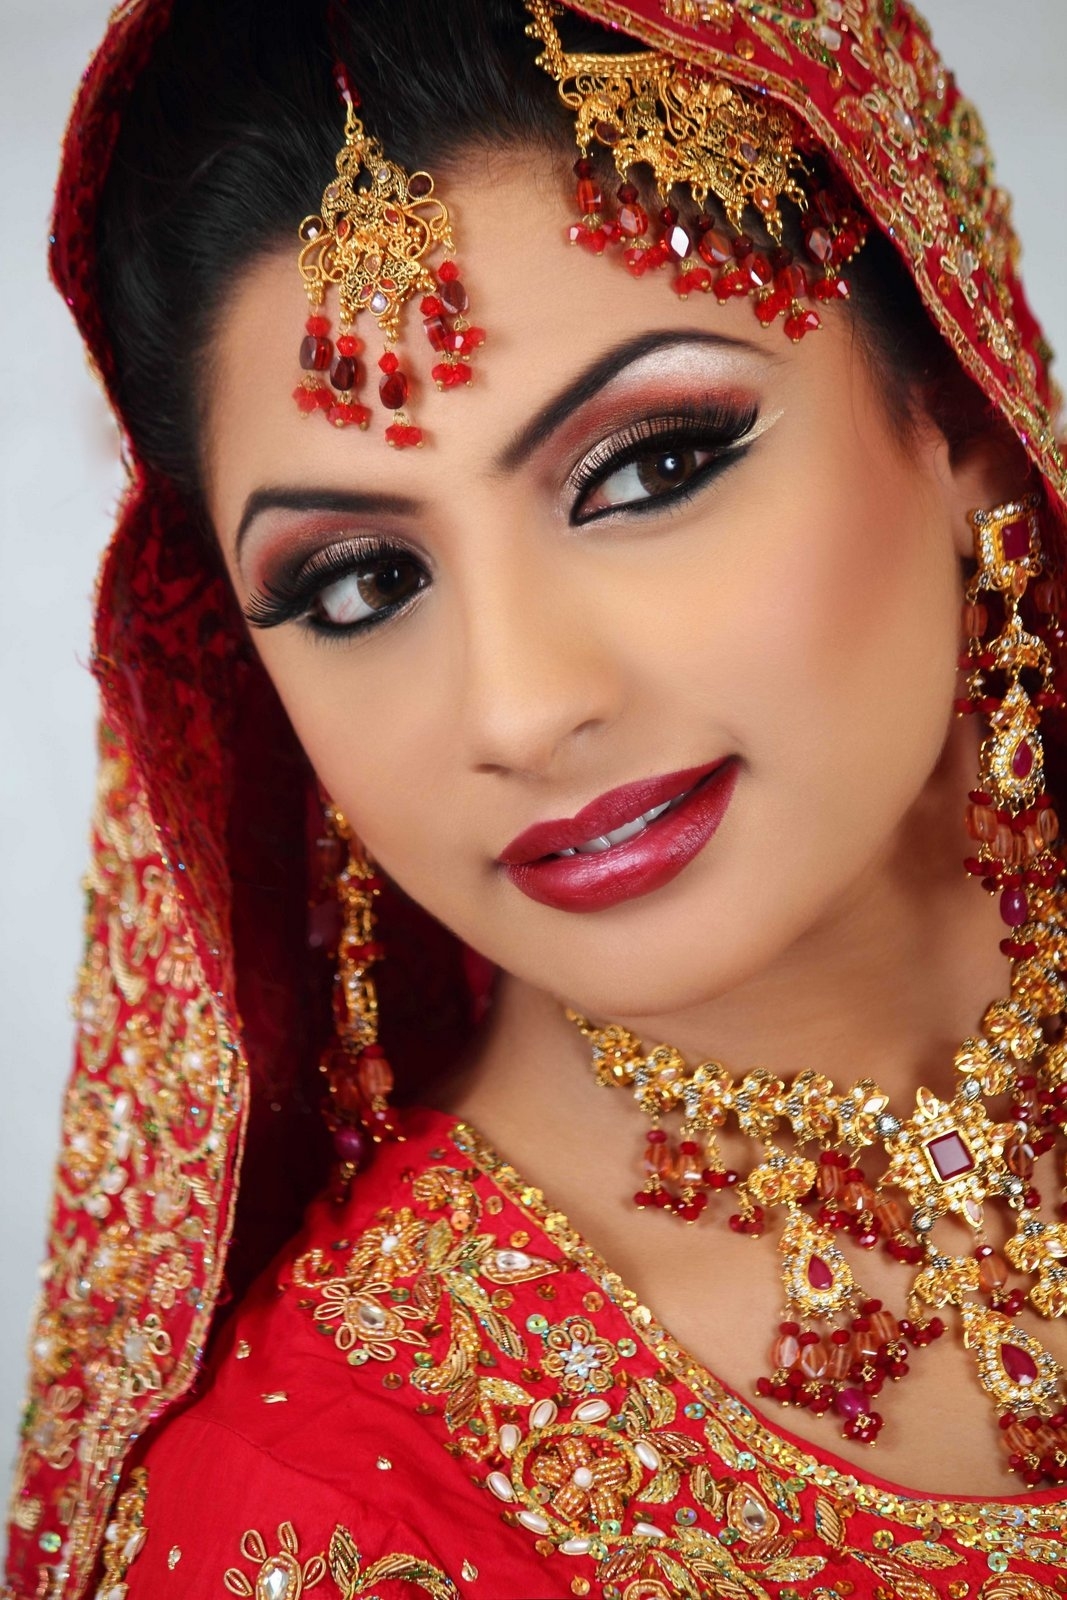 Wedding Makeup Gallery Photos | Saubhaya Makeup pertaining to Wedding Makeup Photo Gallery